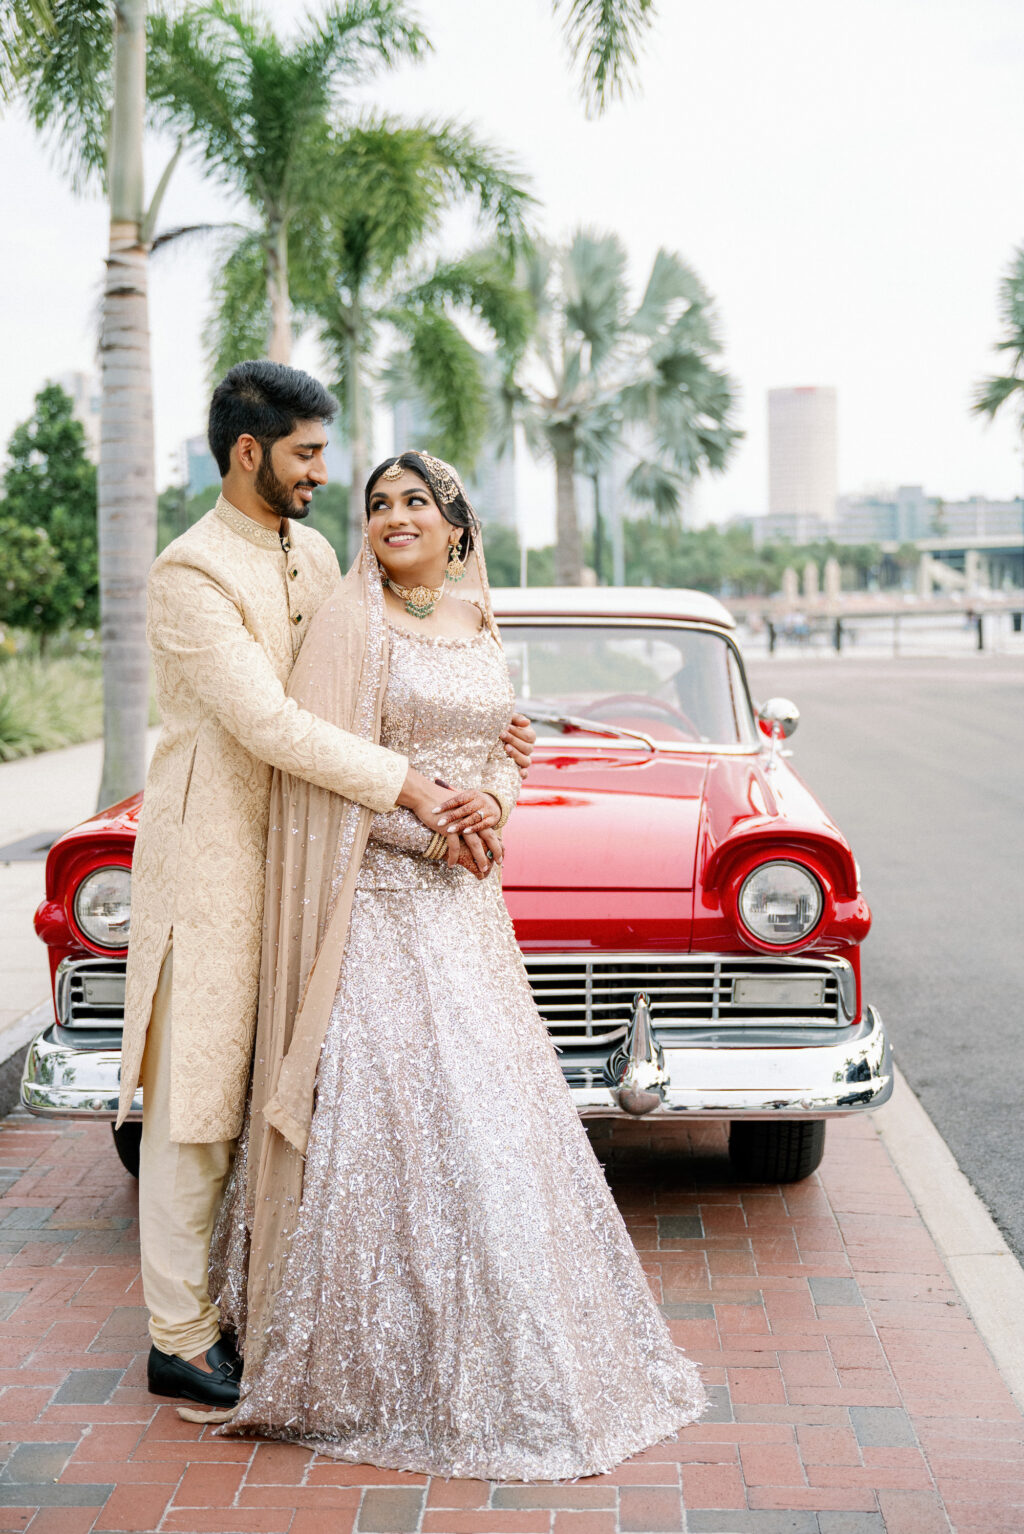 Classical Car Wedding Transportation Ideas | Indian Wedding Traditions